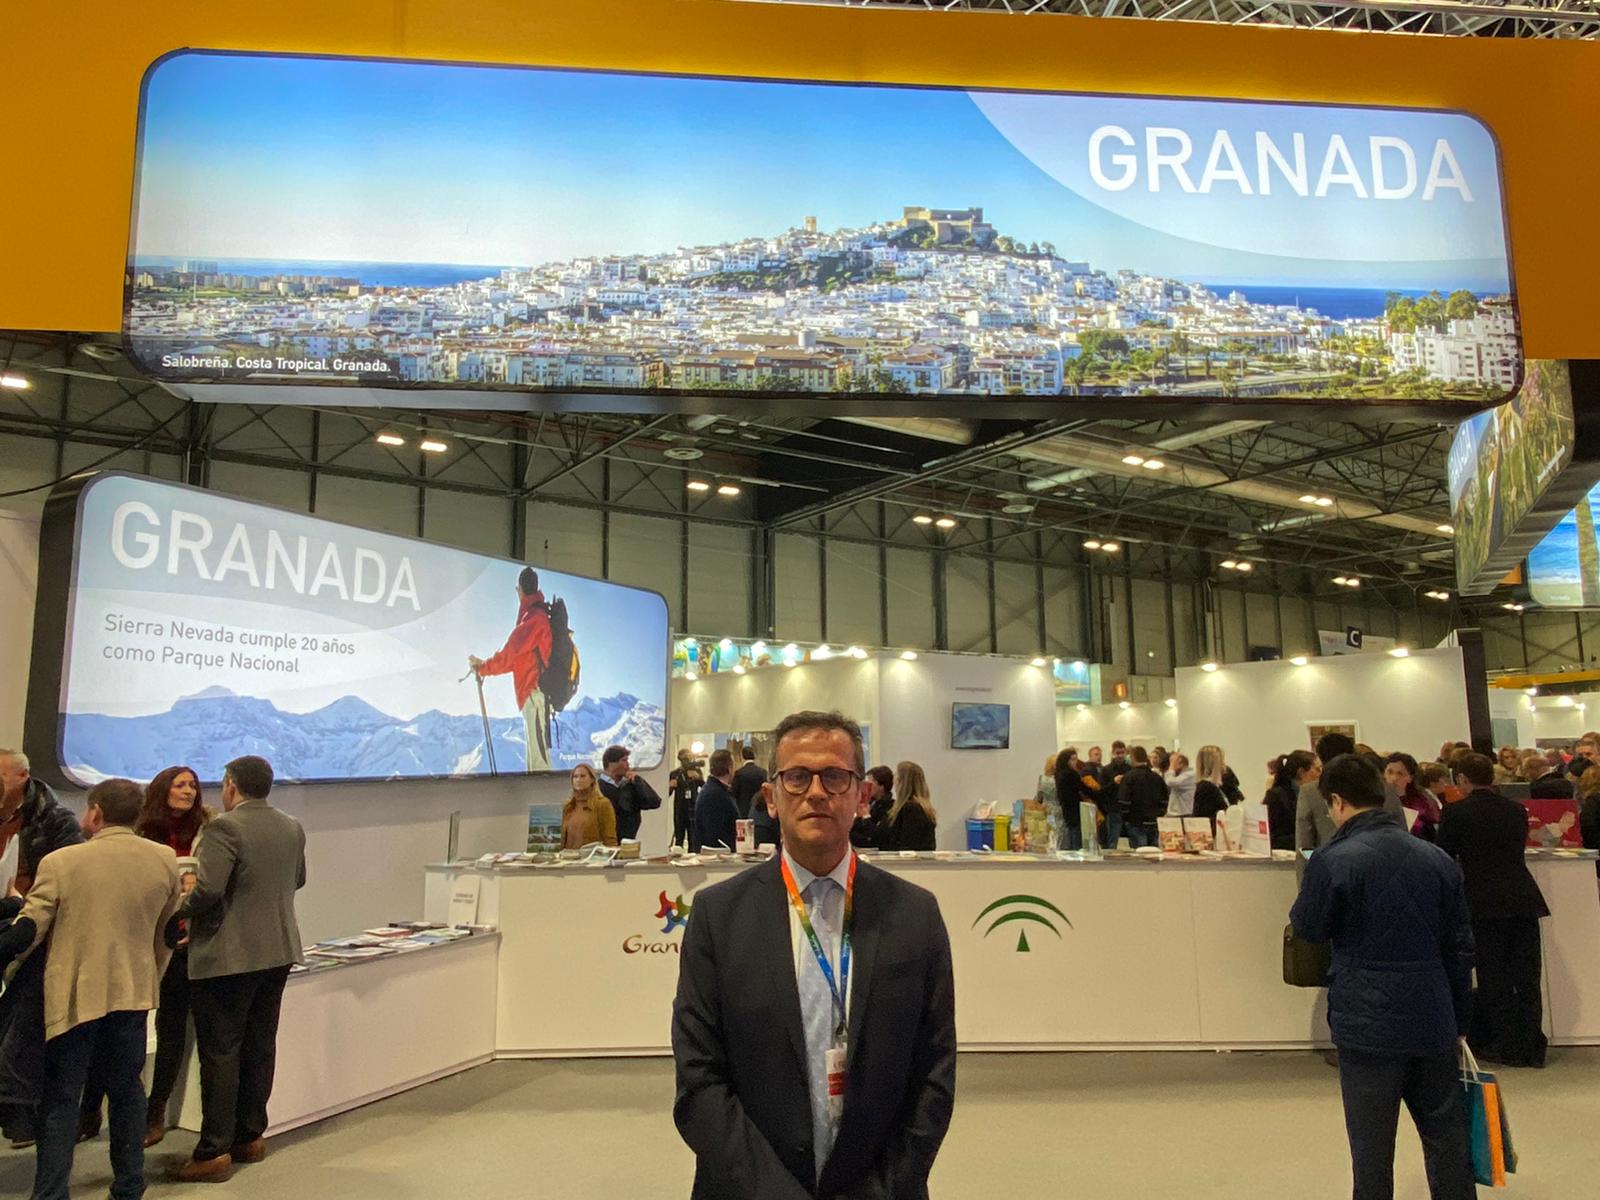 Granada cerró 2019 como el mejor año turístico con más de 5 millones de visitantes, según la Junta